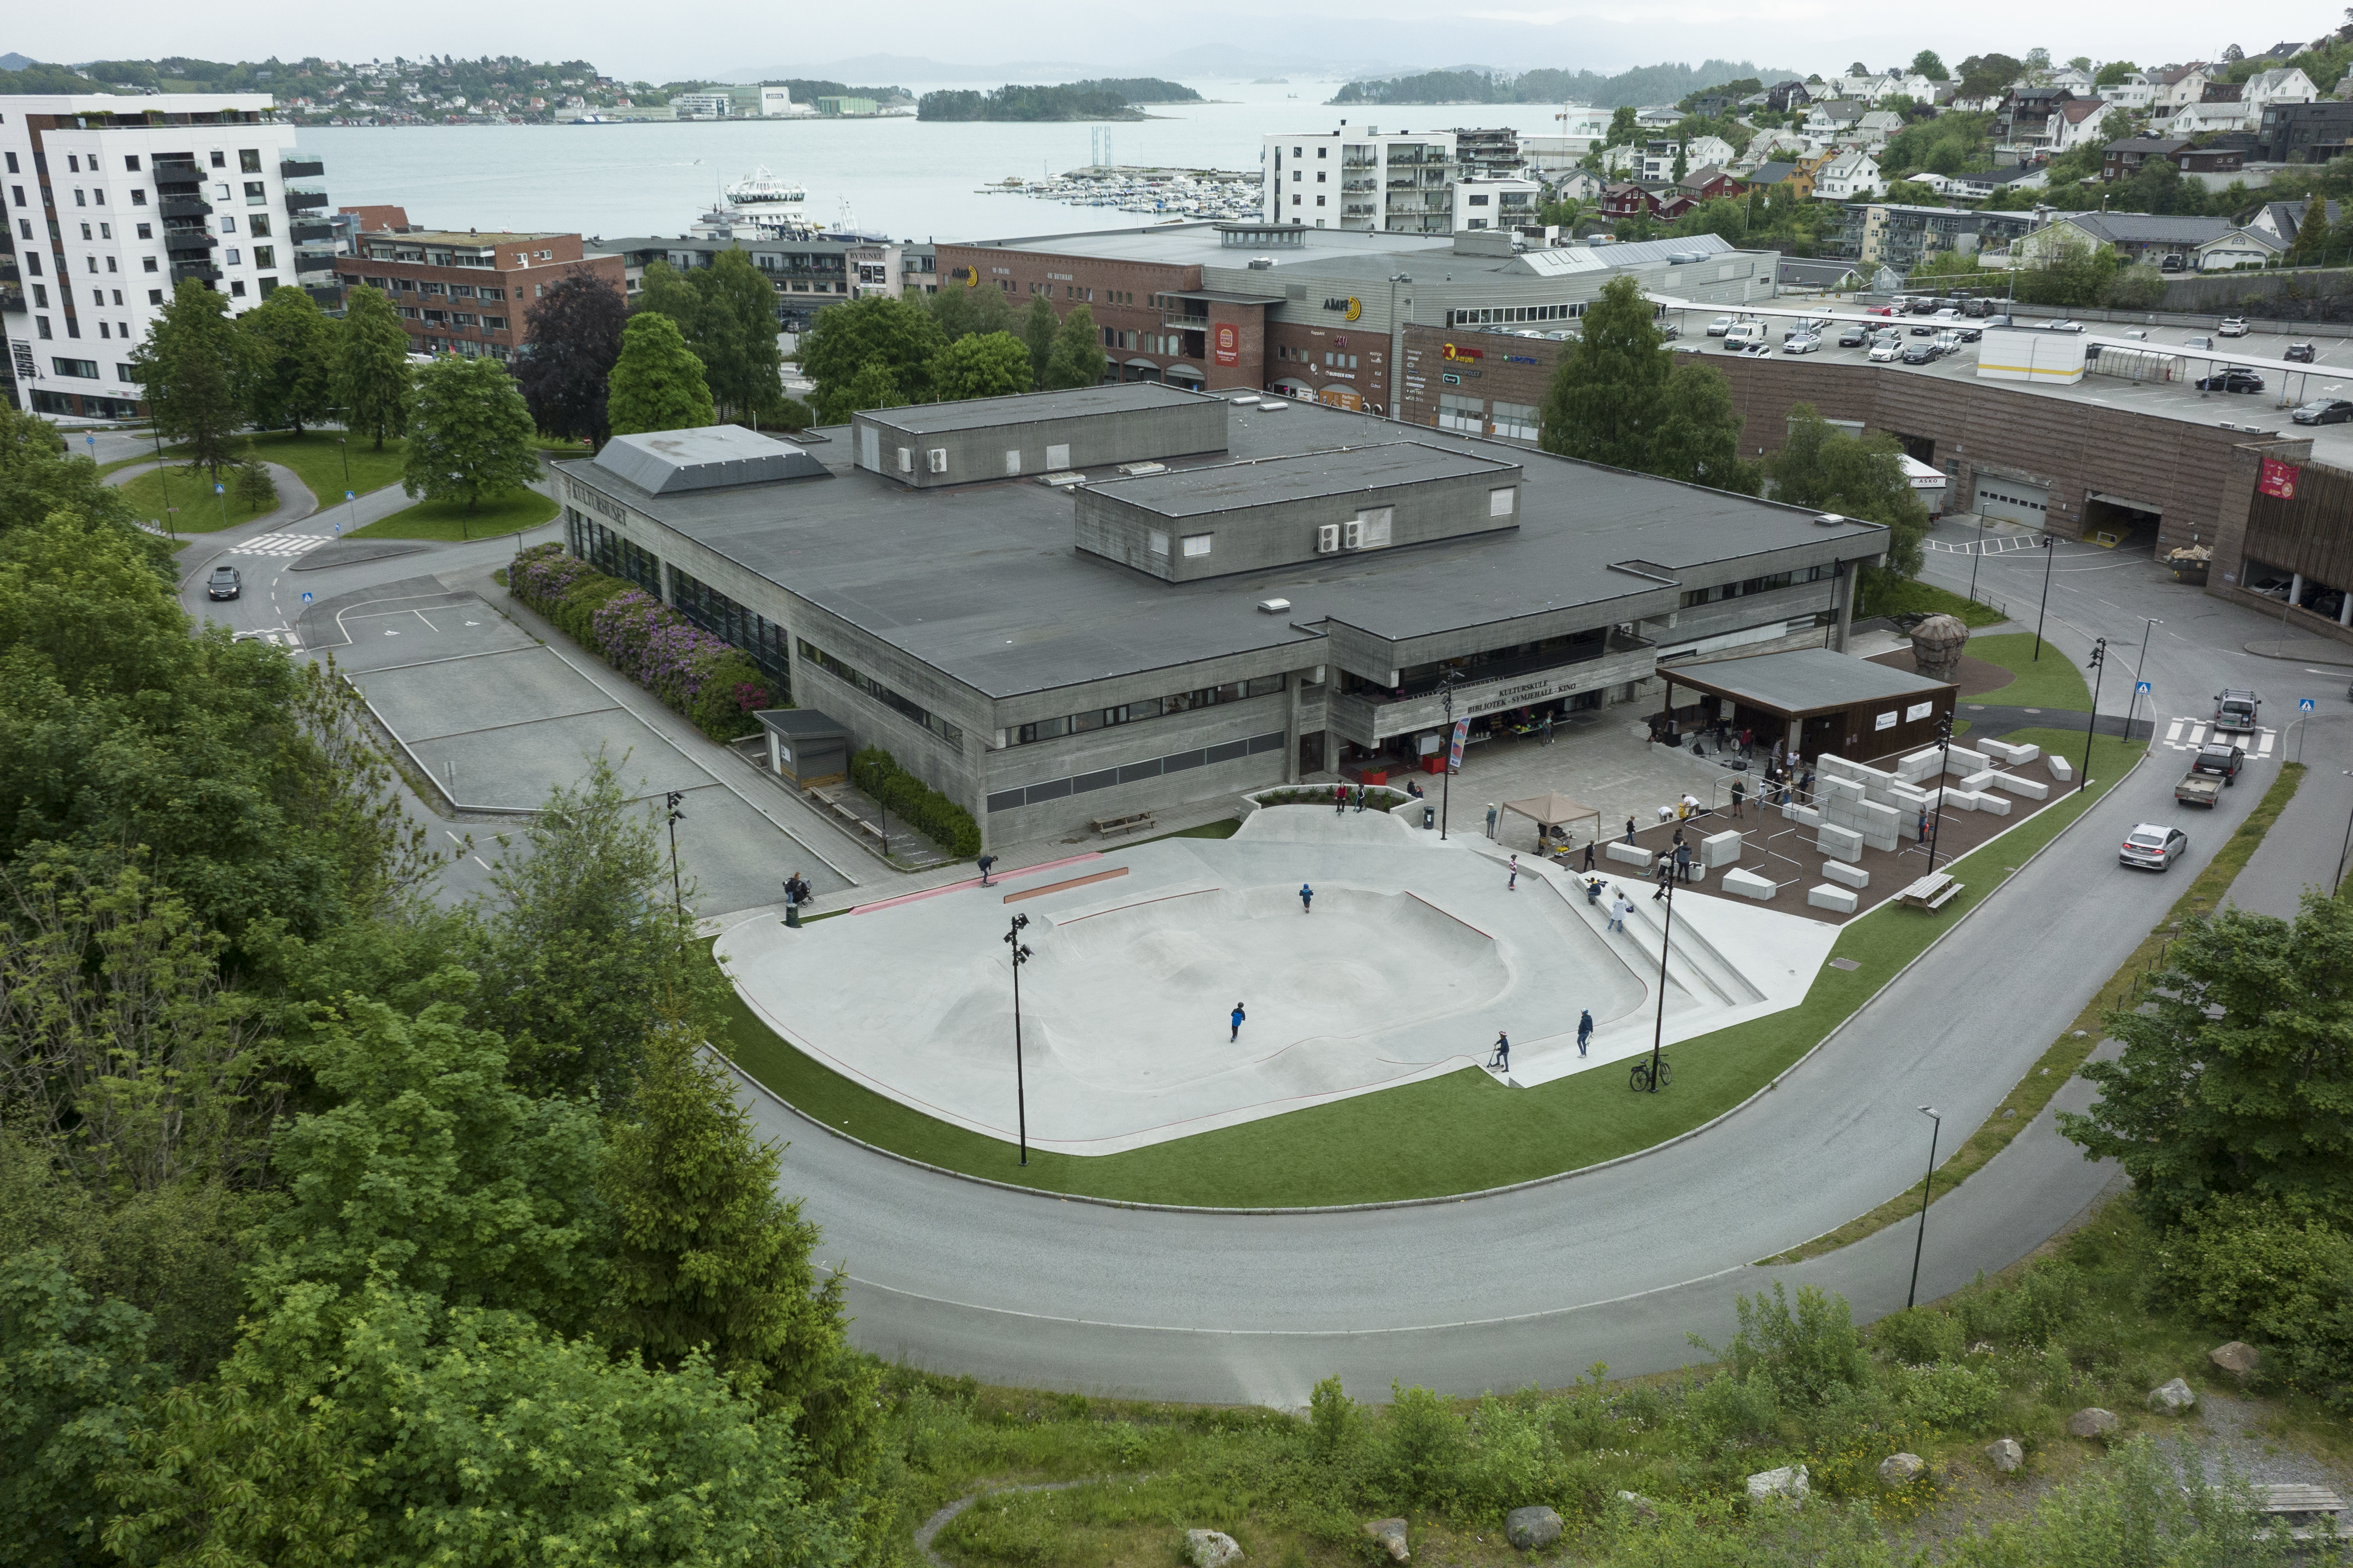 Gropo aktivitetspark ligg sentralt i Leirvik, og er eit kjærkome anlegg. Foto: Stord kommune